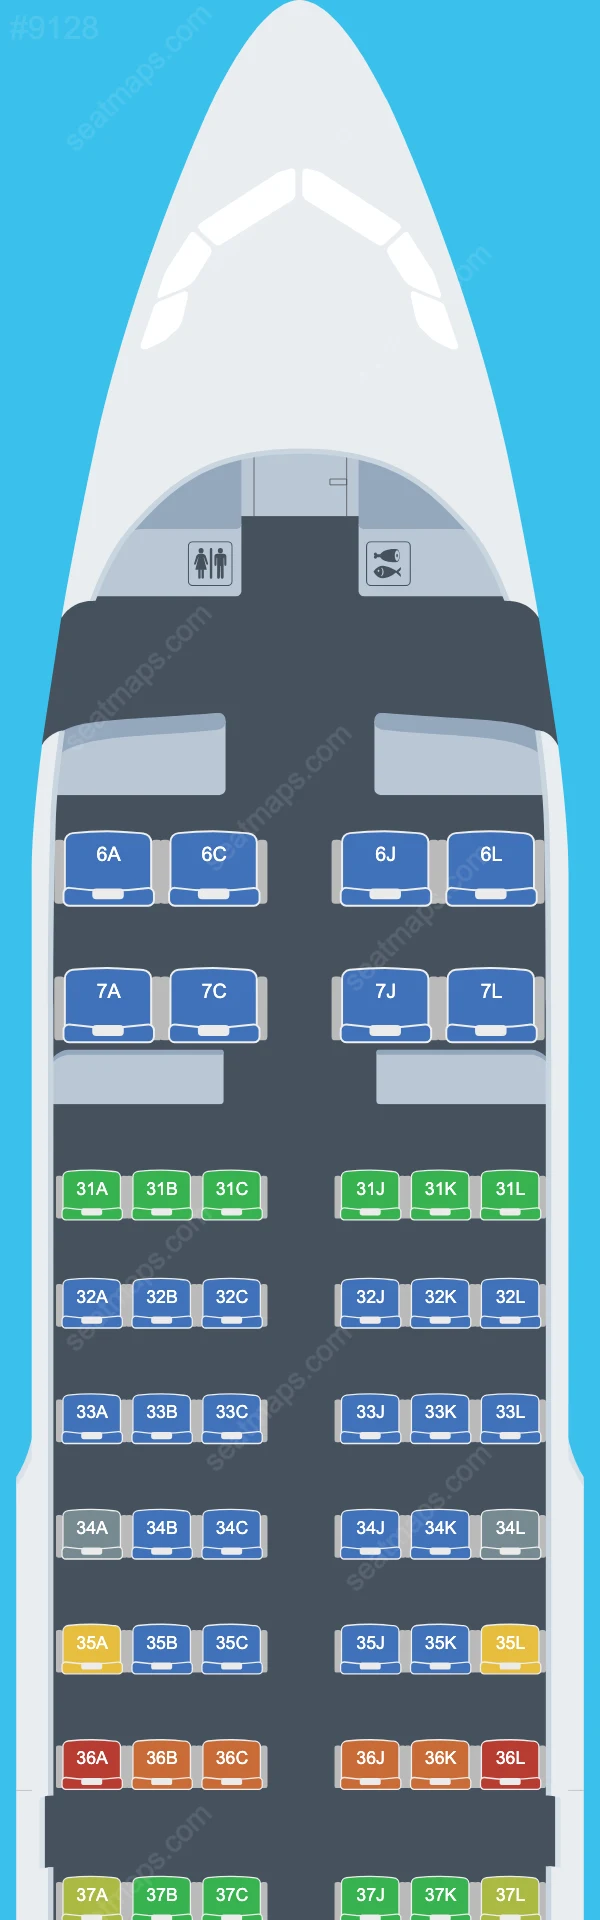 Схема салона China Eastern в самолете Airbus A319 A319-100 V.2